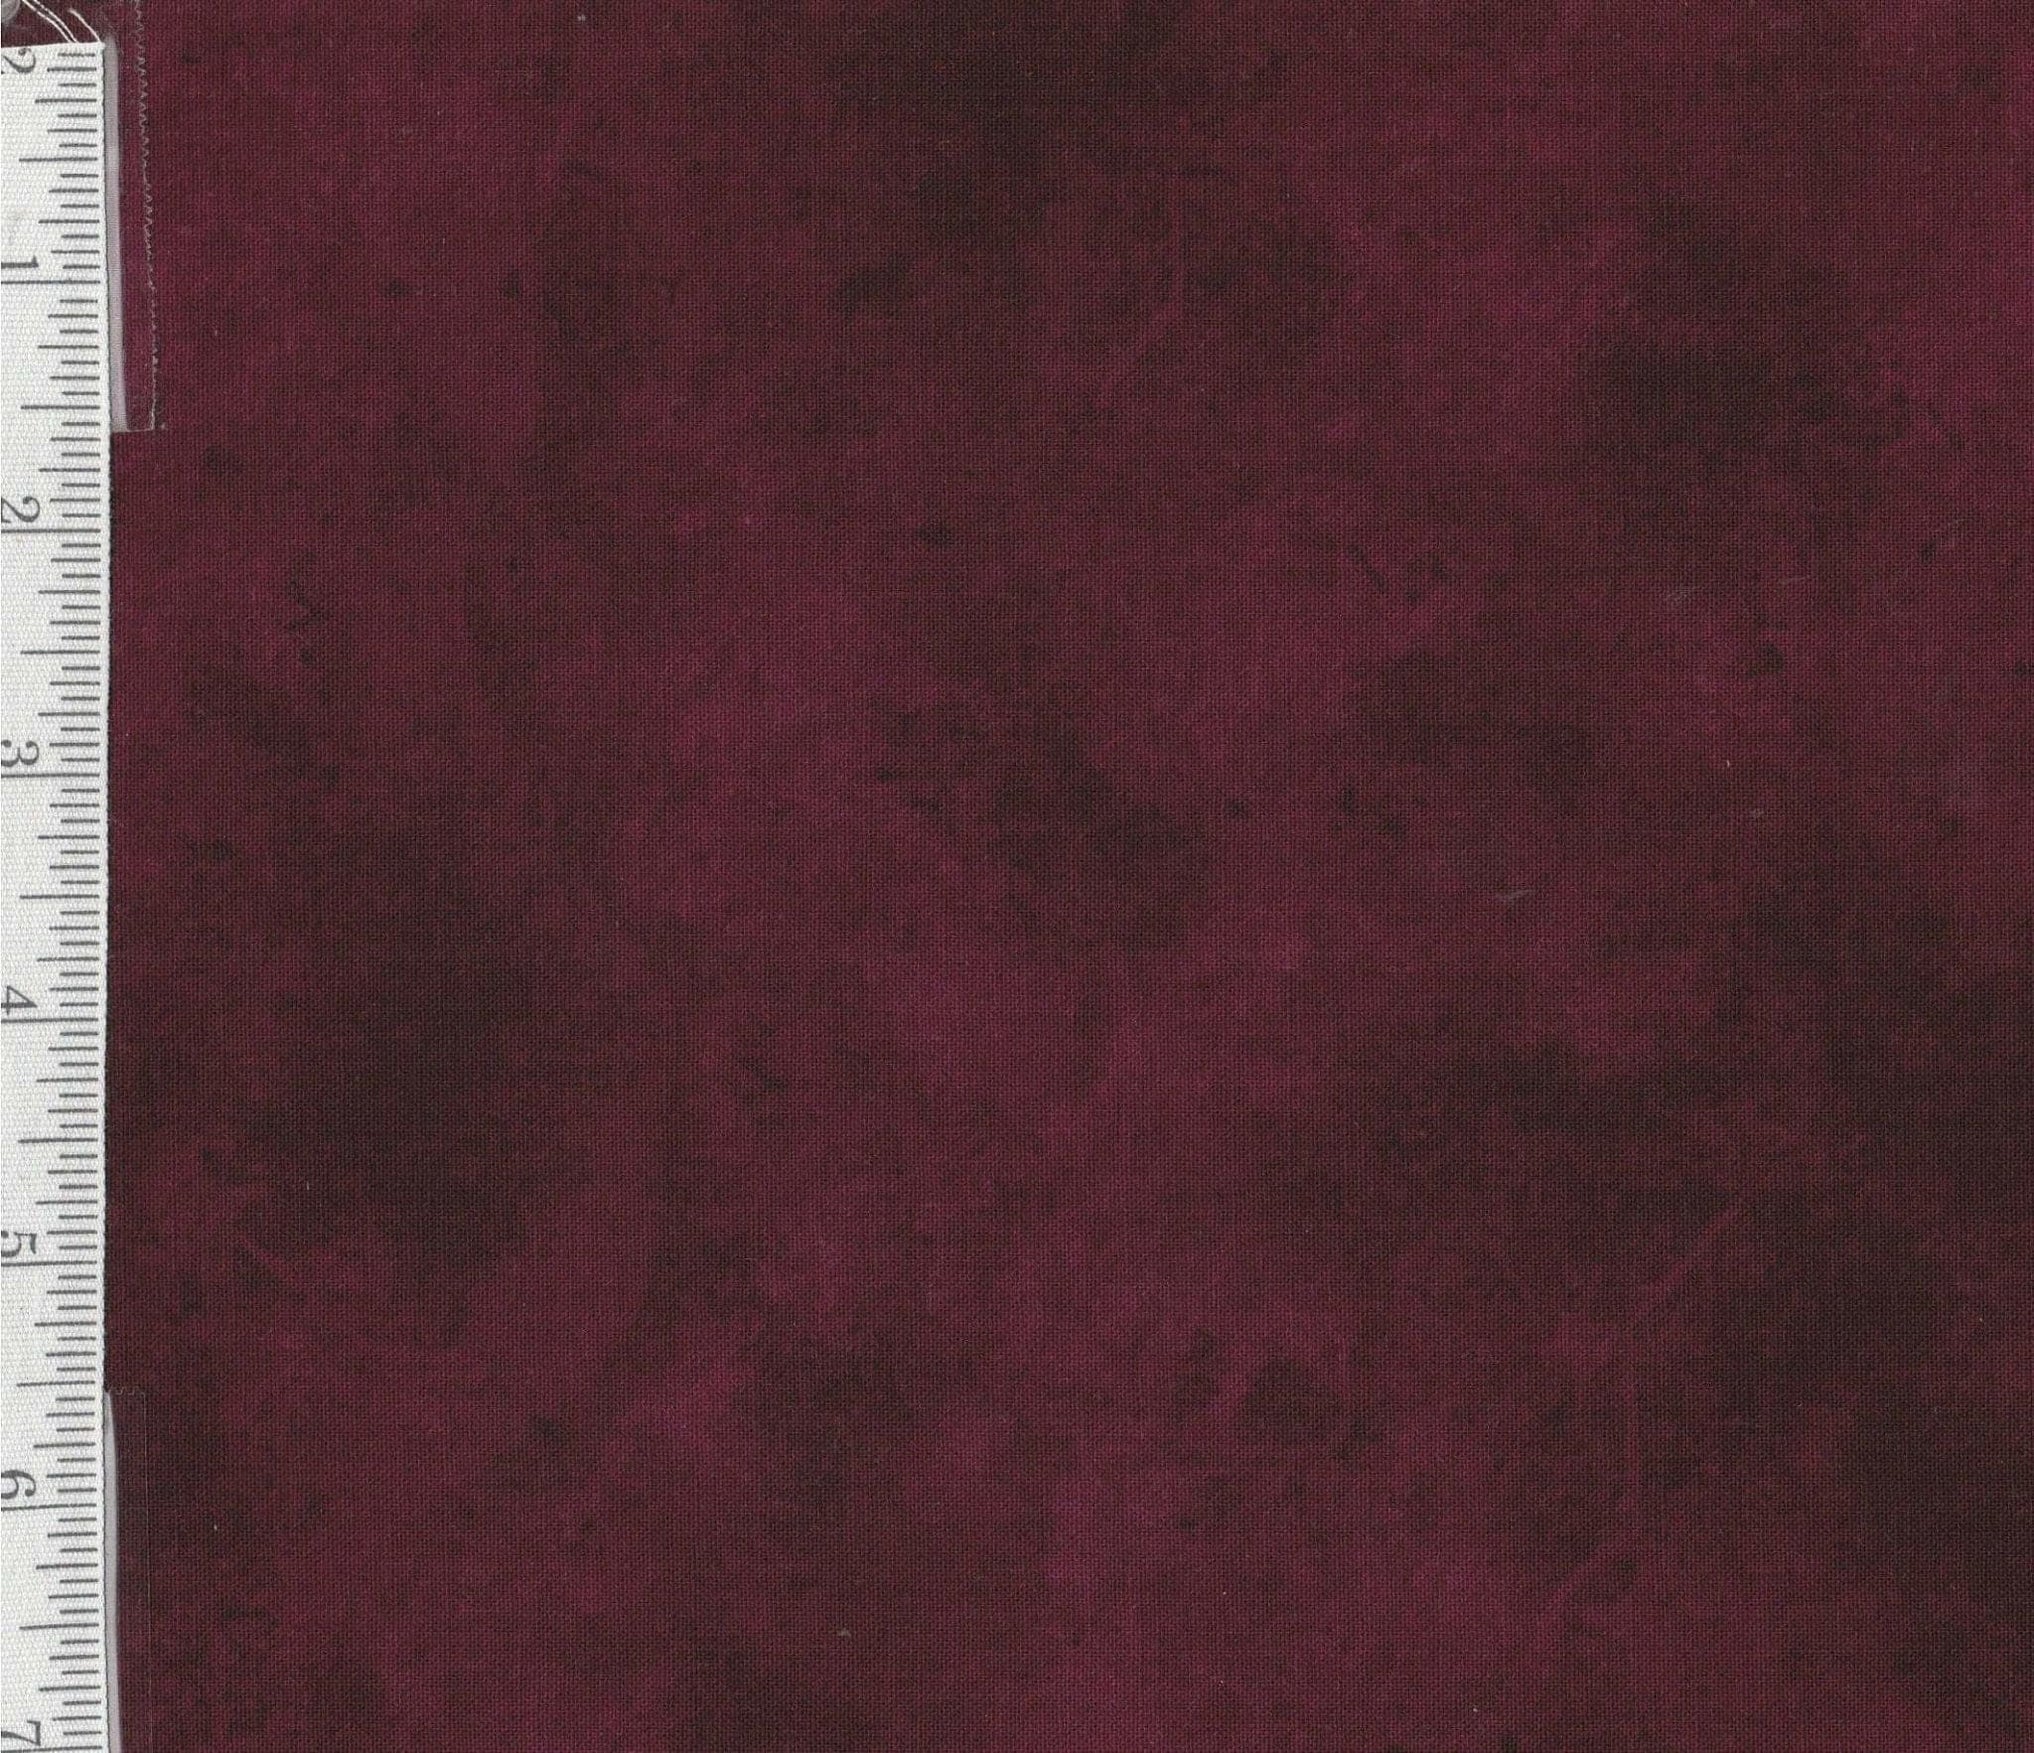 Bella Suede Per Yard Pb Textiles Wine Dark Red Color 00301 Dr 256245 2034x1754 ?v=1596648746